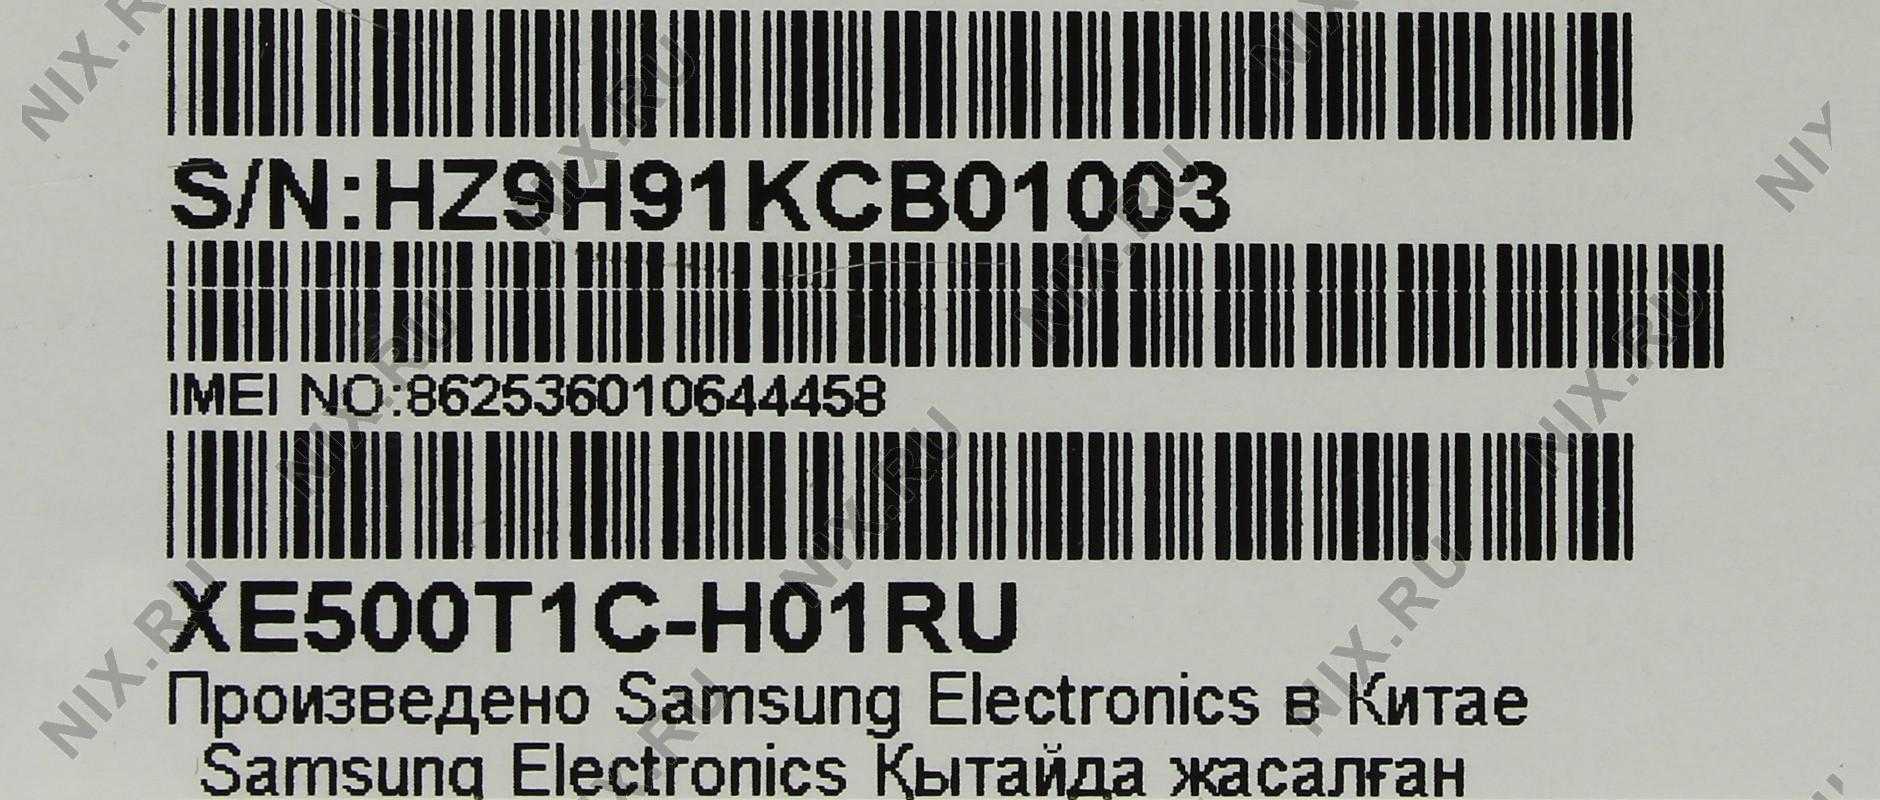 Samsung ativ smart pc xe500t1c-a01 64gb dock купить по акционной цене , отзывы и обзоры.